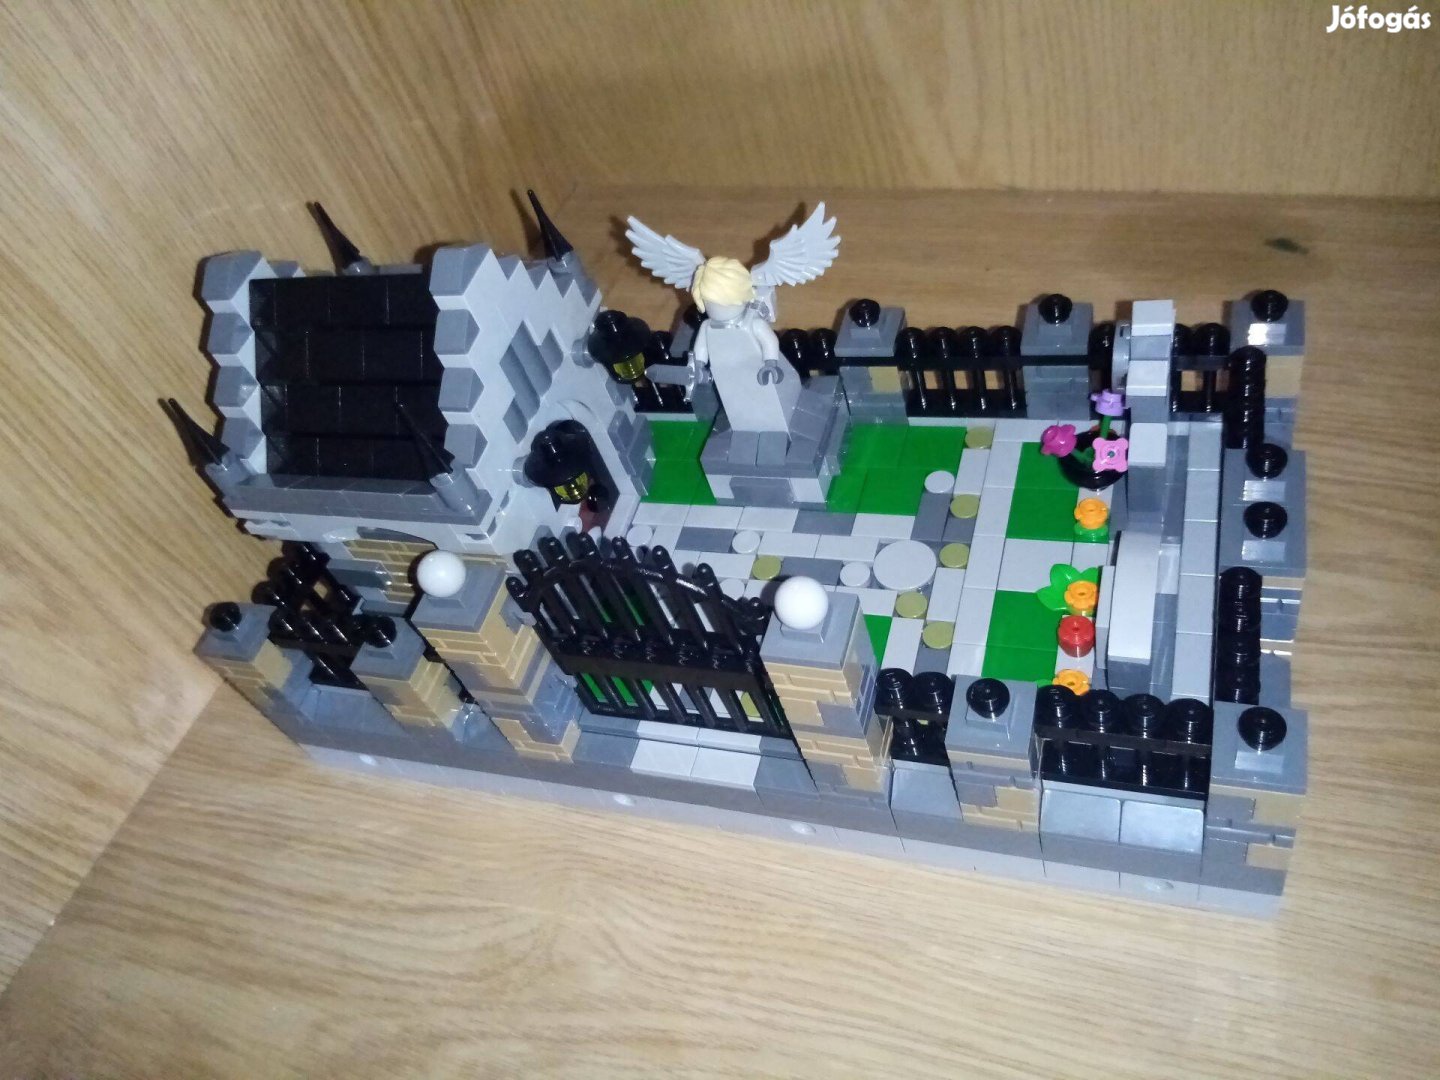 Lego castle középkori temető MOC